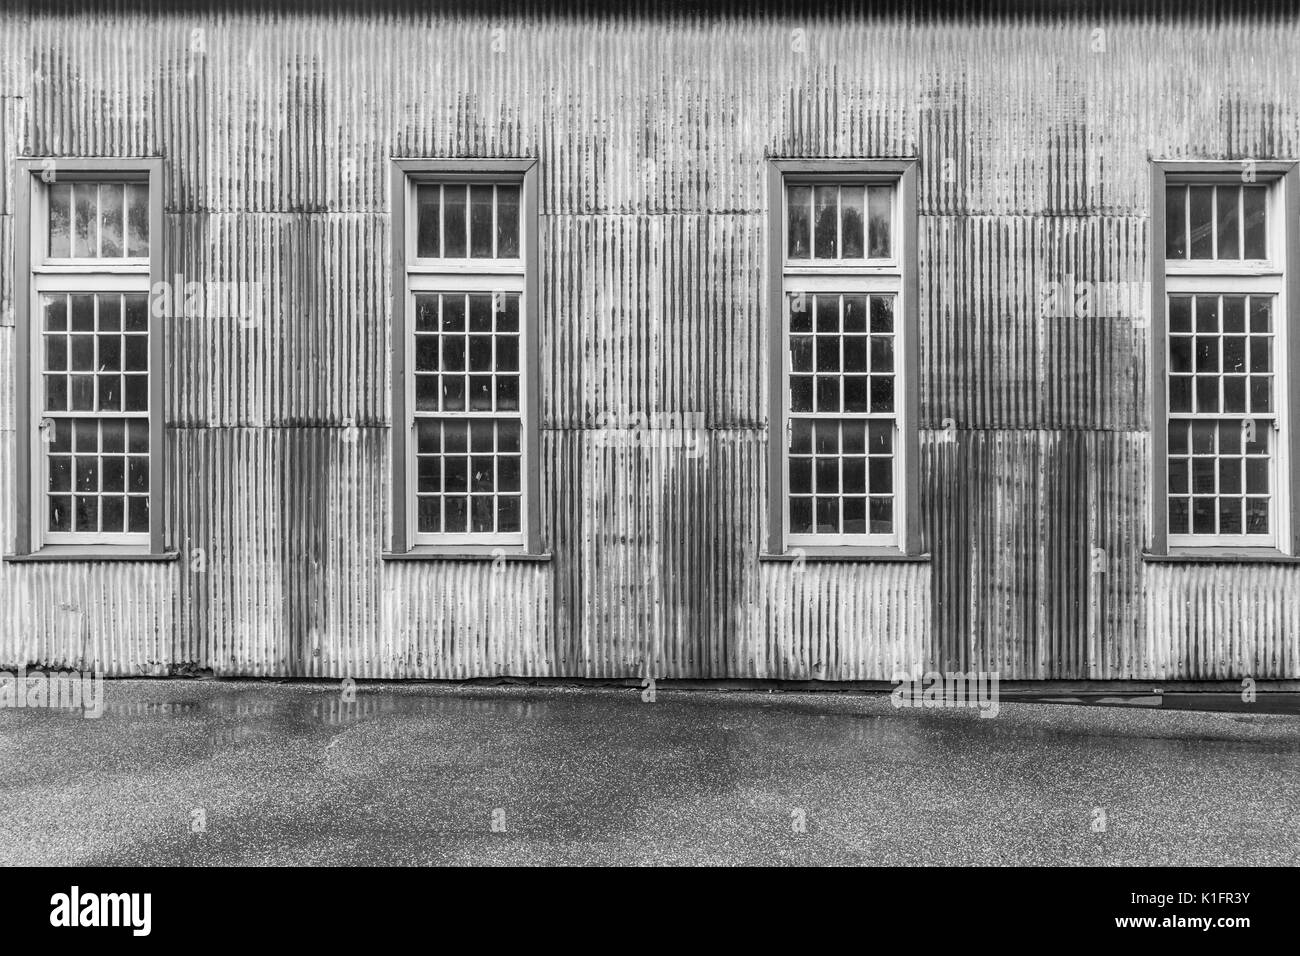 Old rusty metal hangar avec de grandes fenêtres en noir et blanc gros plan Banque D'Images